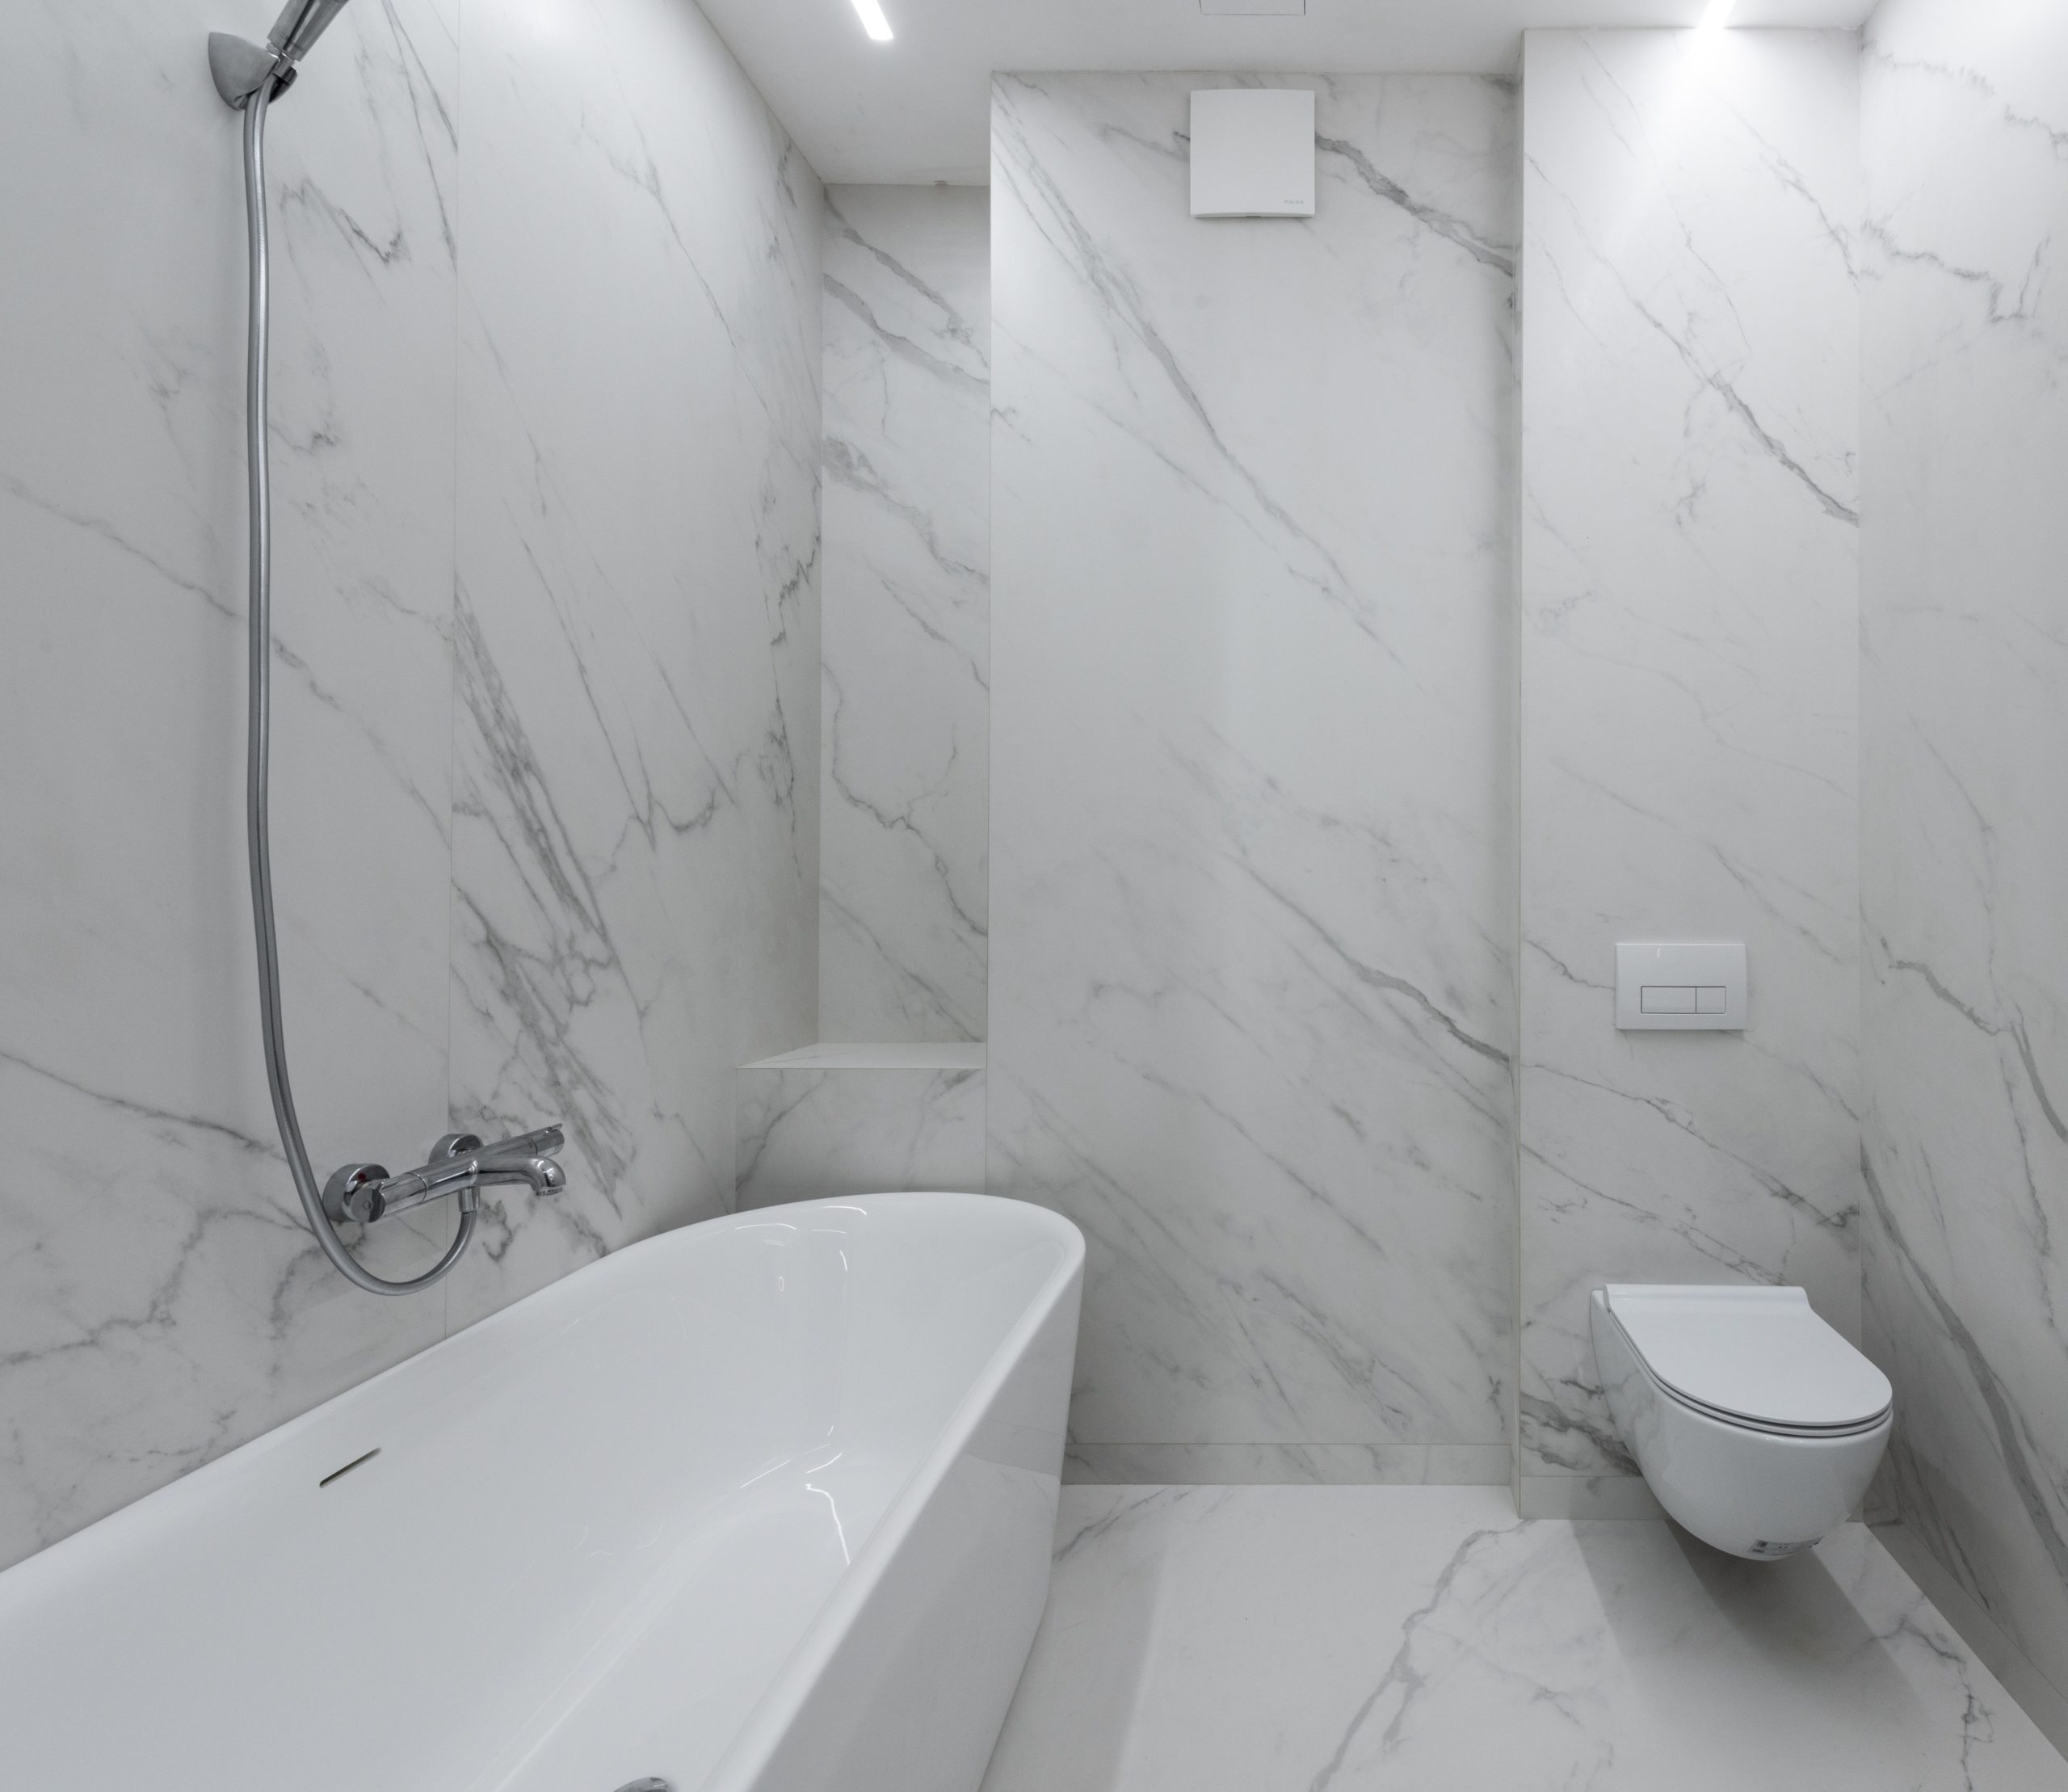 Uma boa ideia é decorar o banheiro usando um mesmo padrão de revestimento, como este da imagem onde o porcelanato imita o mármore.